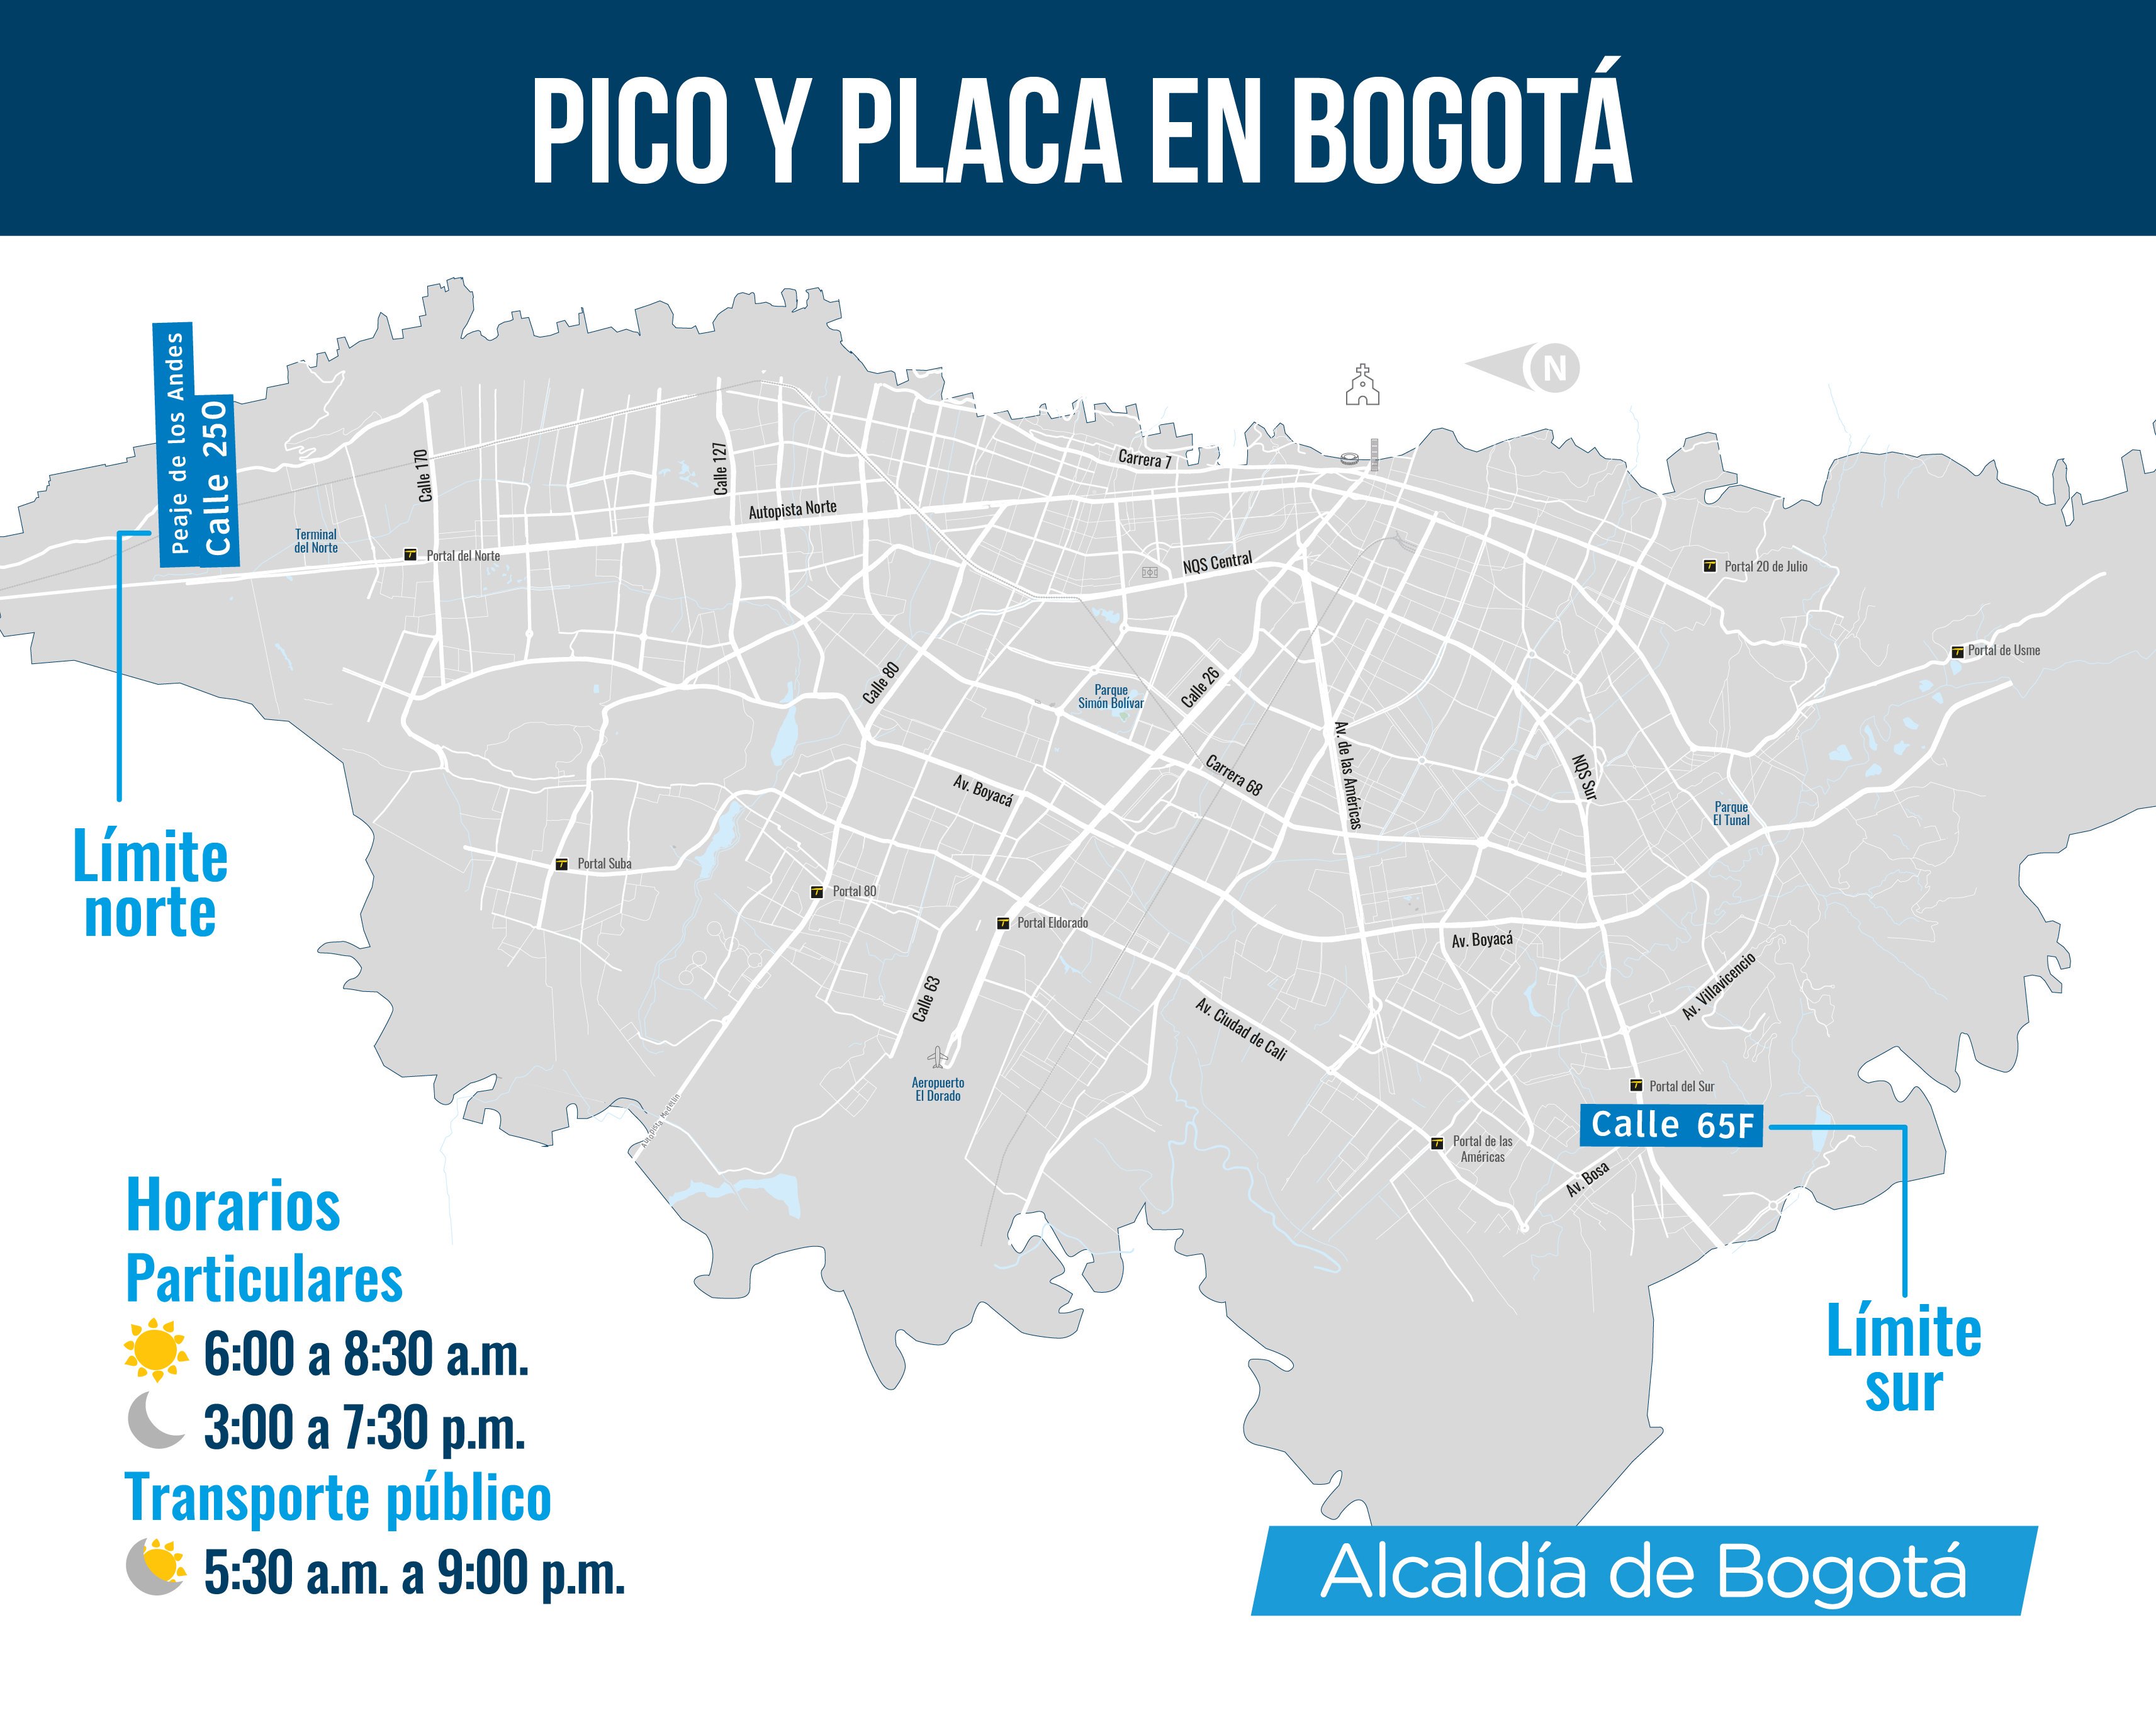 Mapa de Bogotá con el pico y placa del martes 9 de julio 